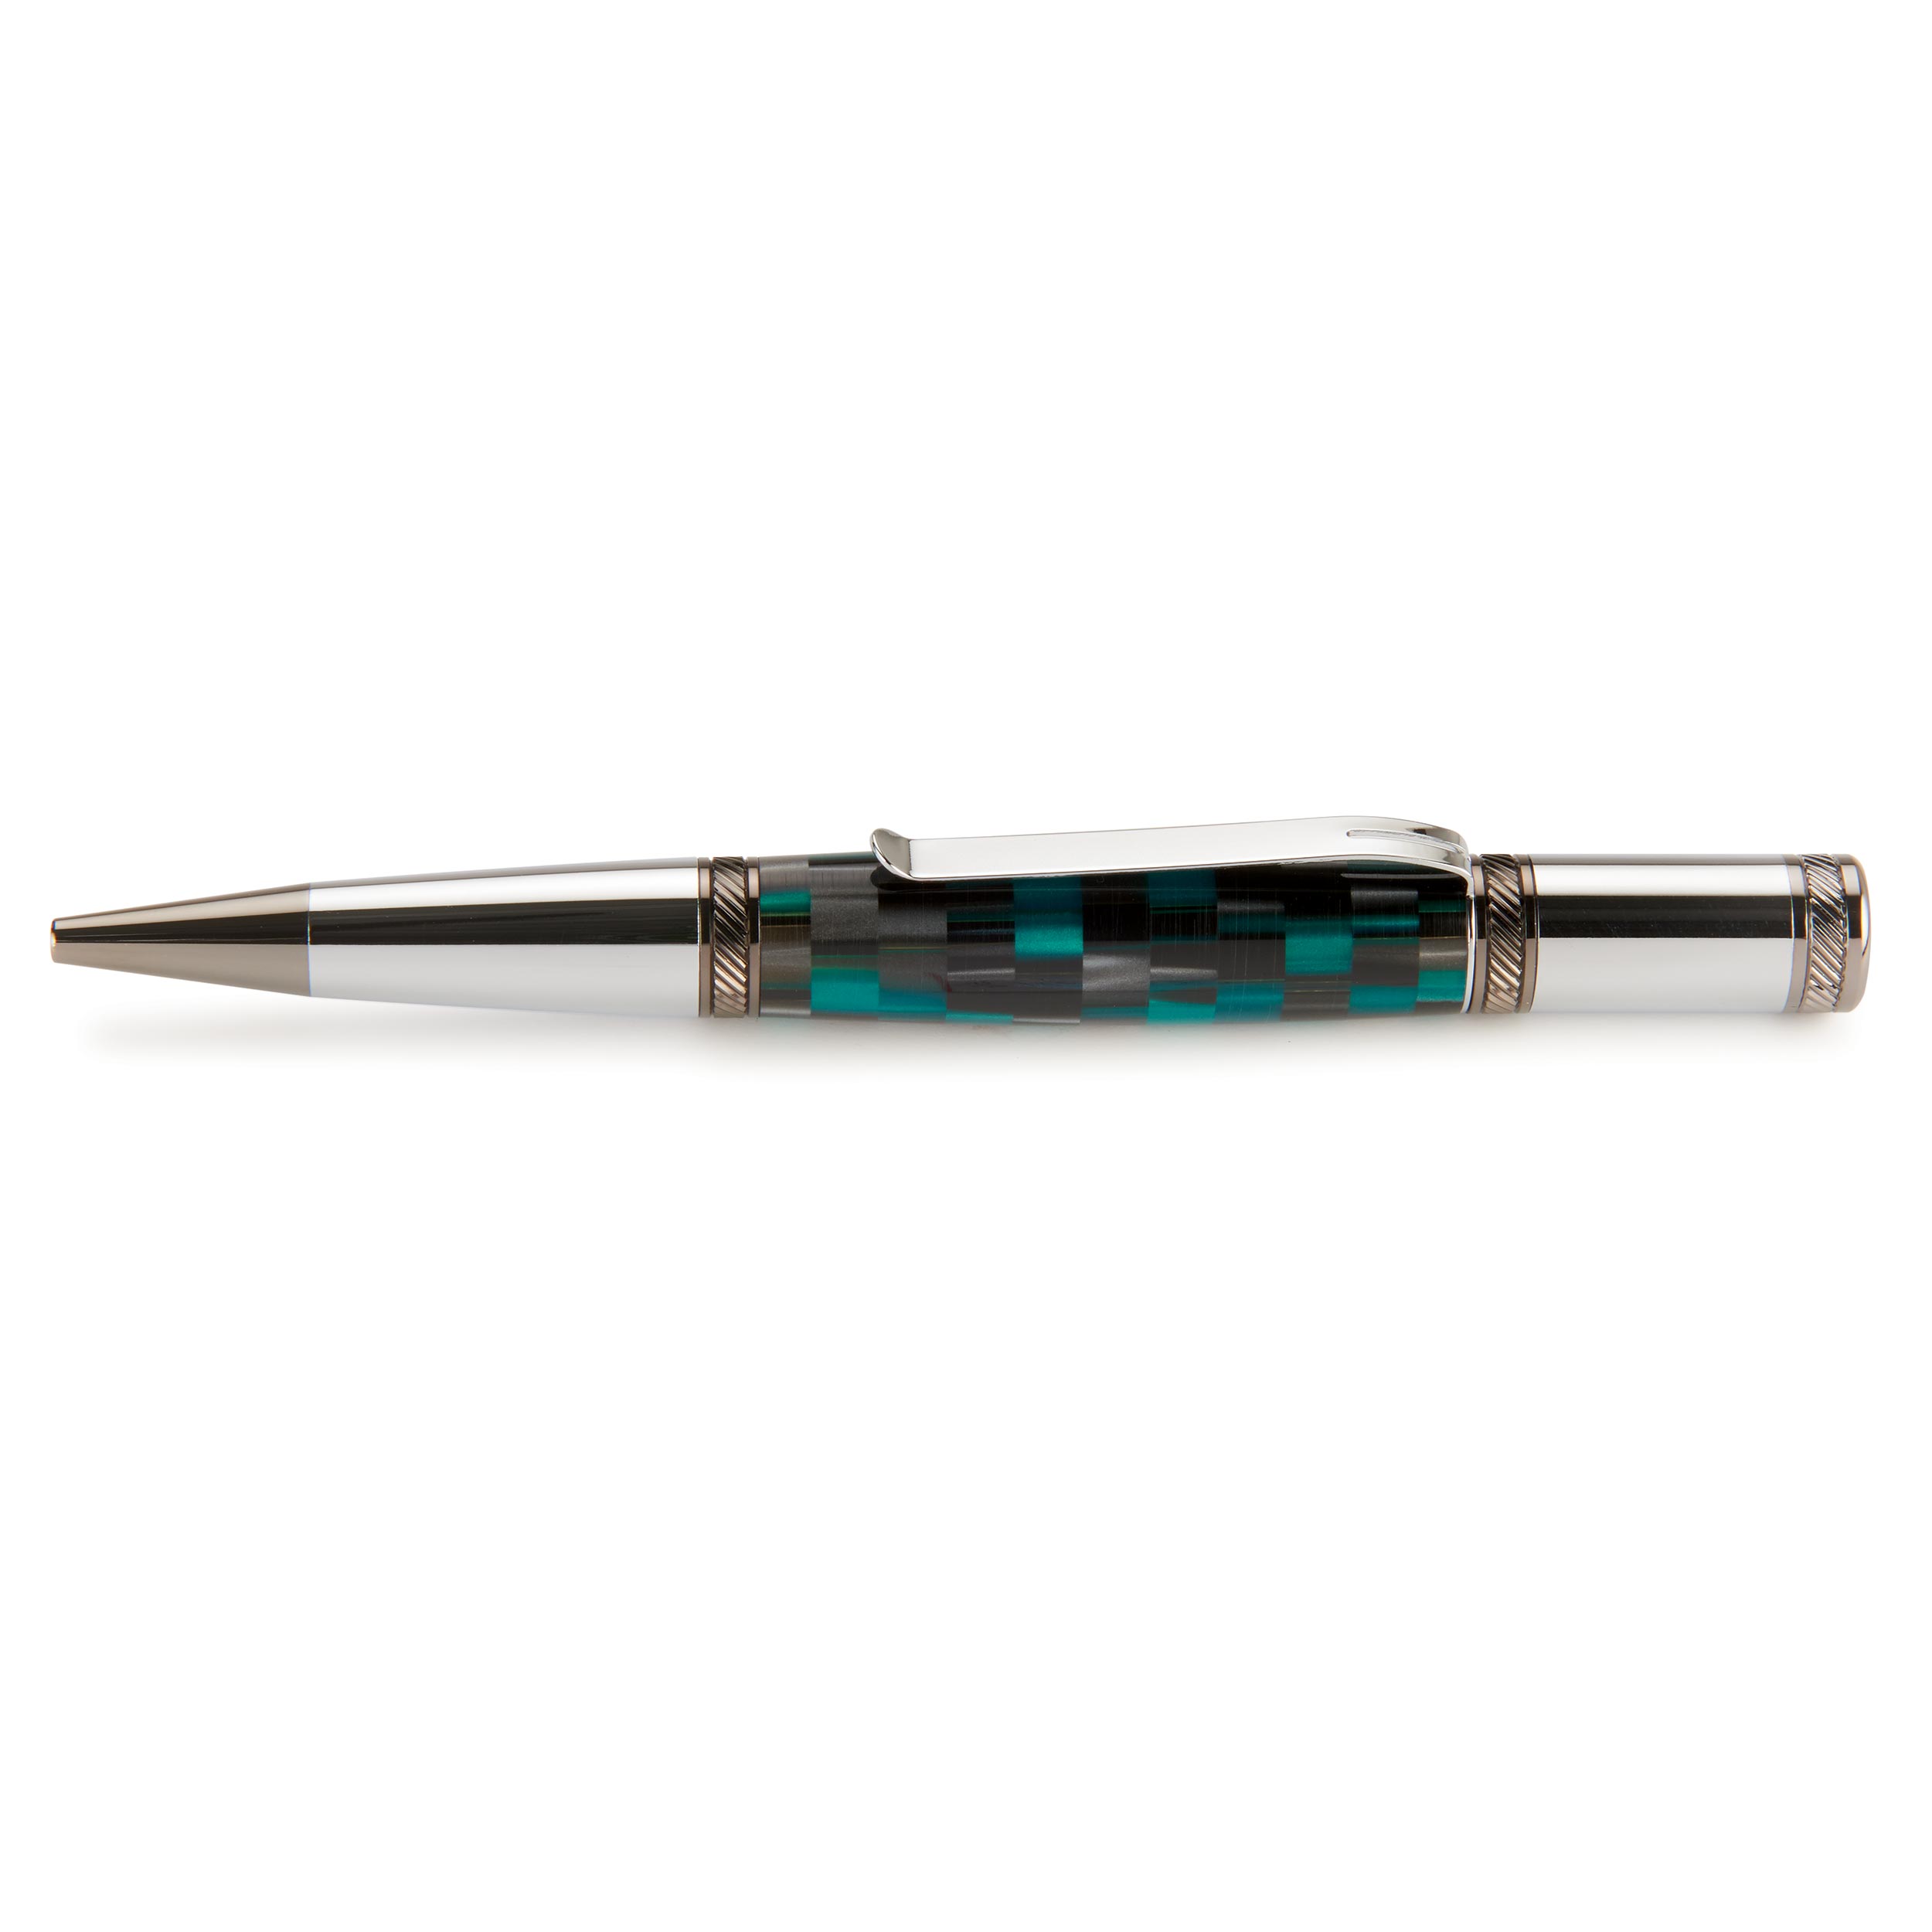 Enterprise Finial Twist Ballpoint Pen Kit - Chrome & Gunmetal